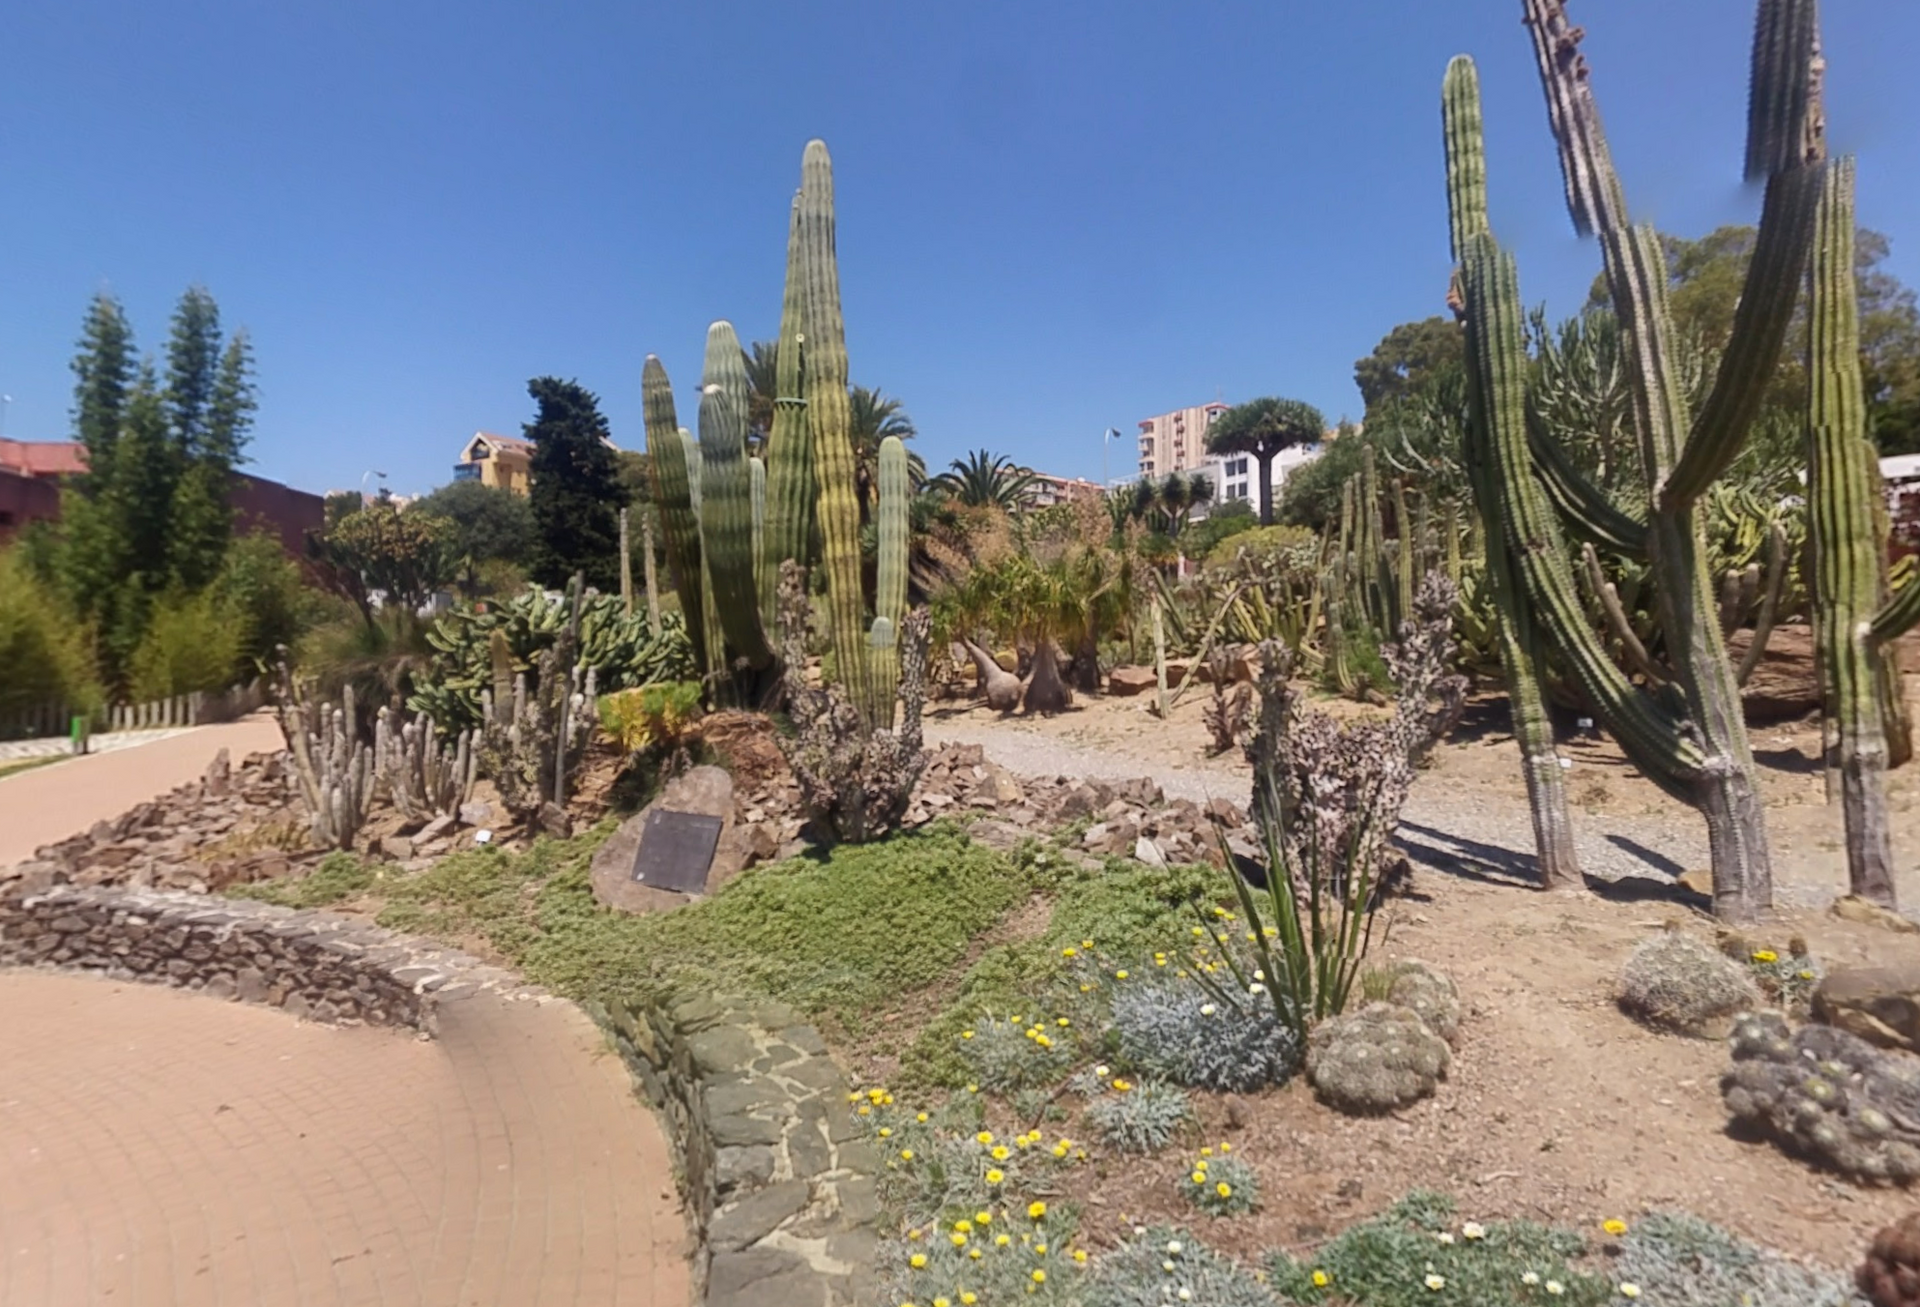 Parque de la Paloma by Google Earth